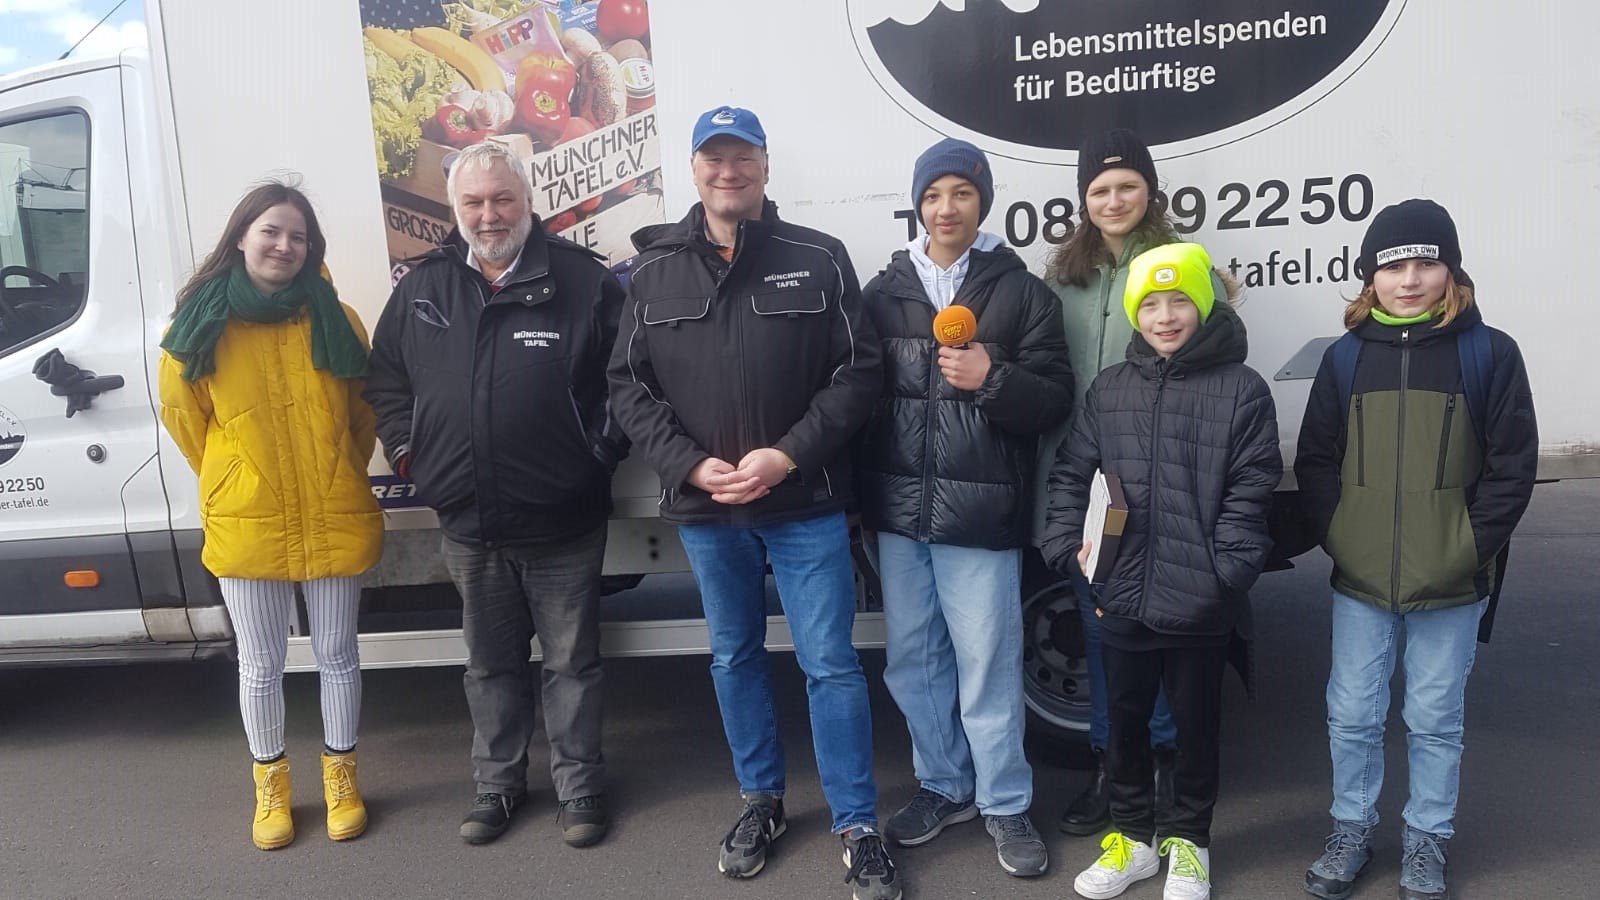 Unser Südpolteam mit Axel Schweiger und Steffen Horak vor einem Laster der Münchner Tafel